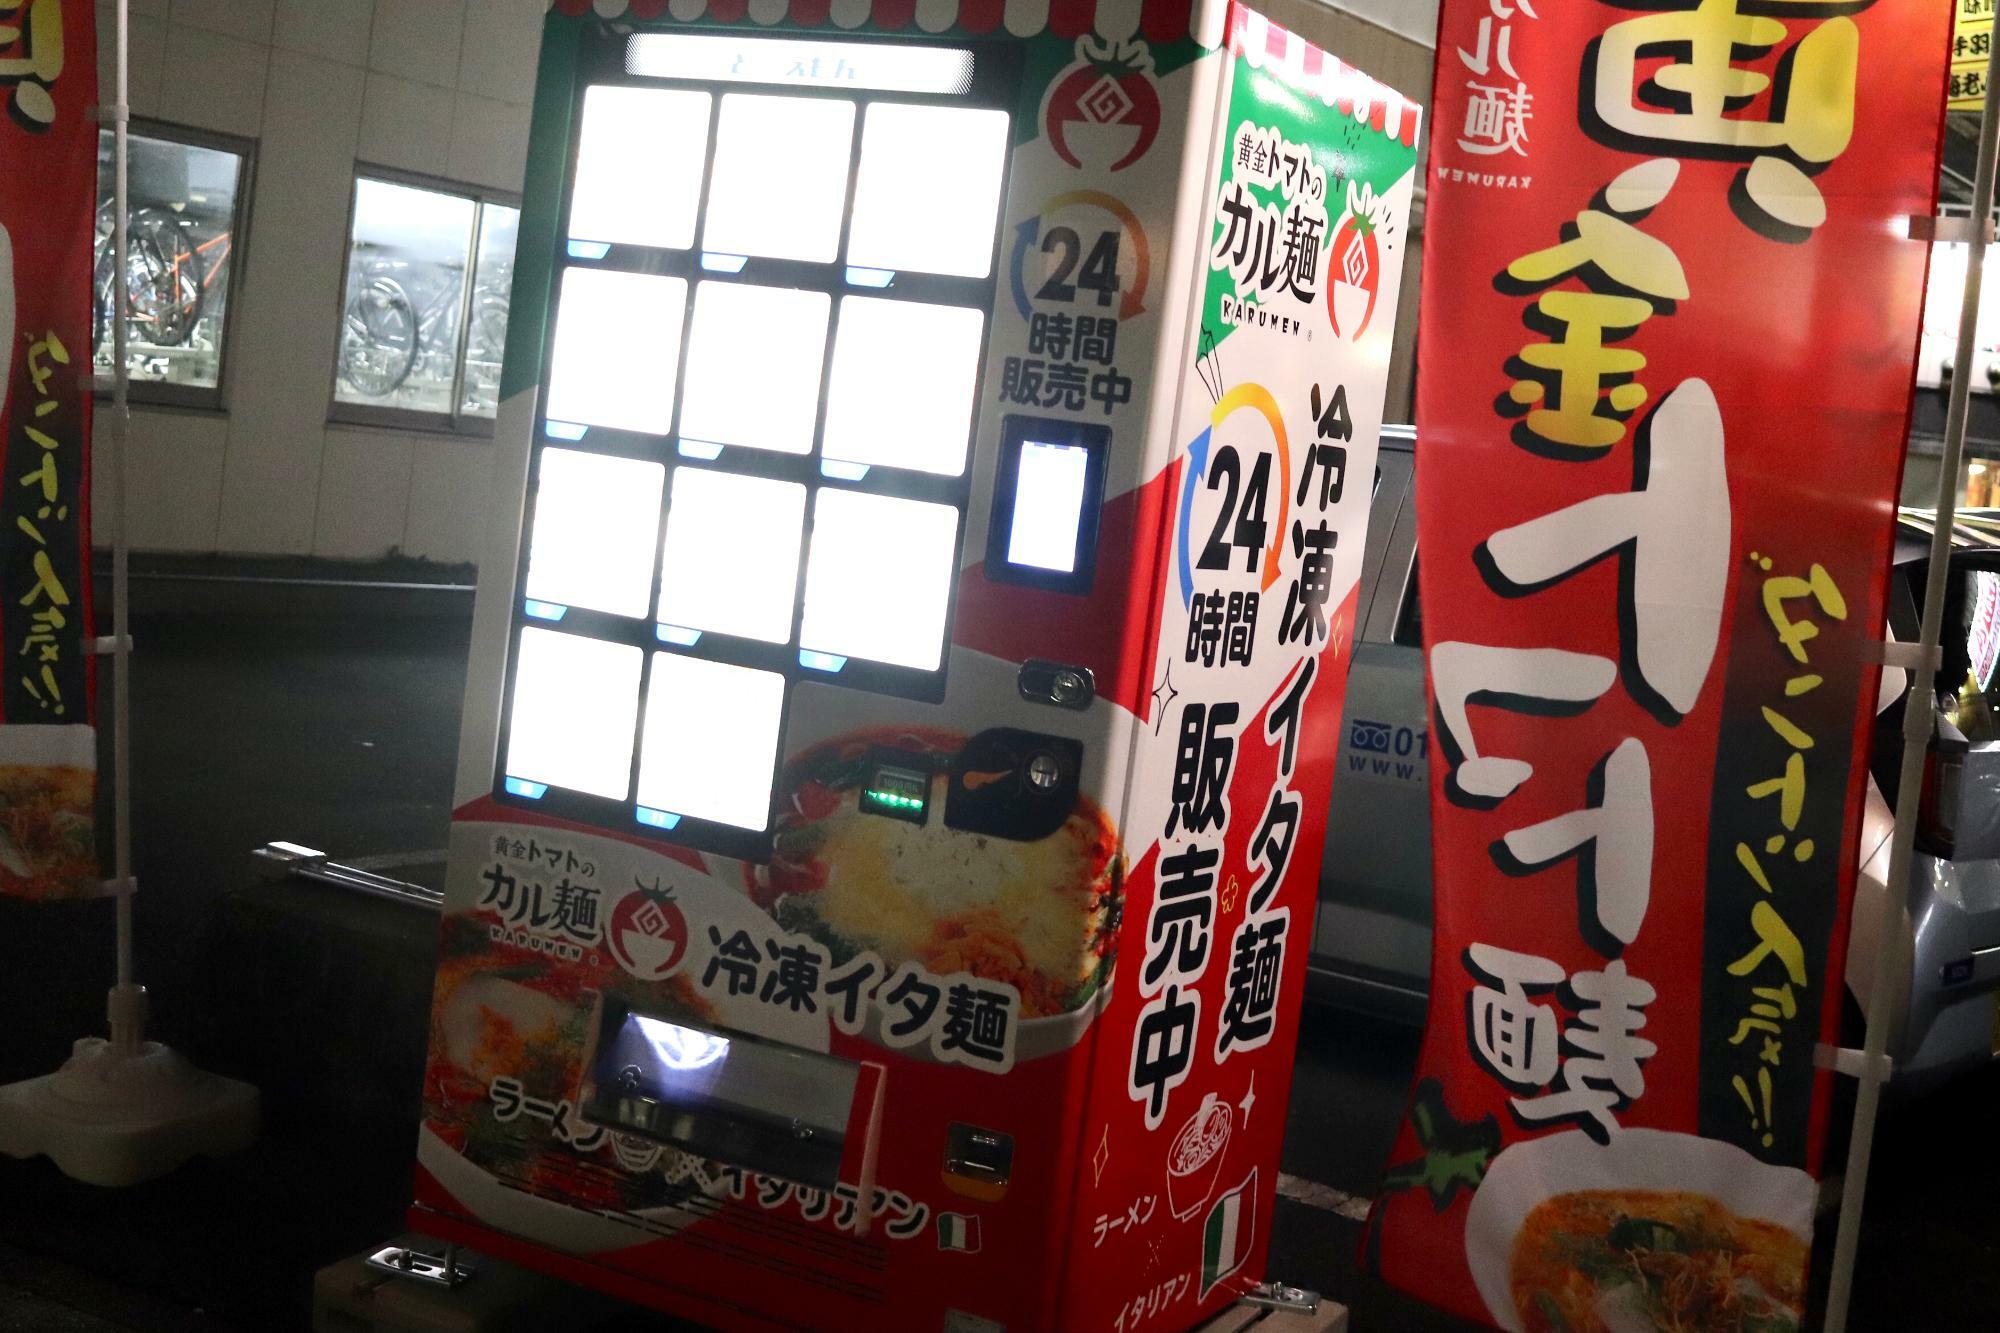 「黄金トマトのカル麺」さんの自動販売機